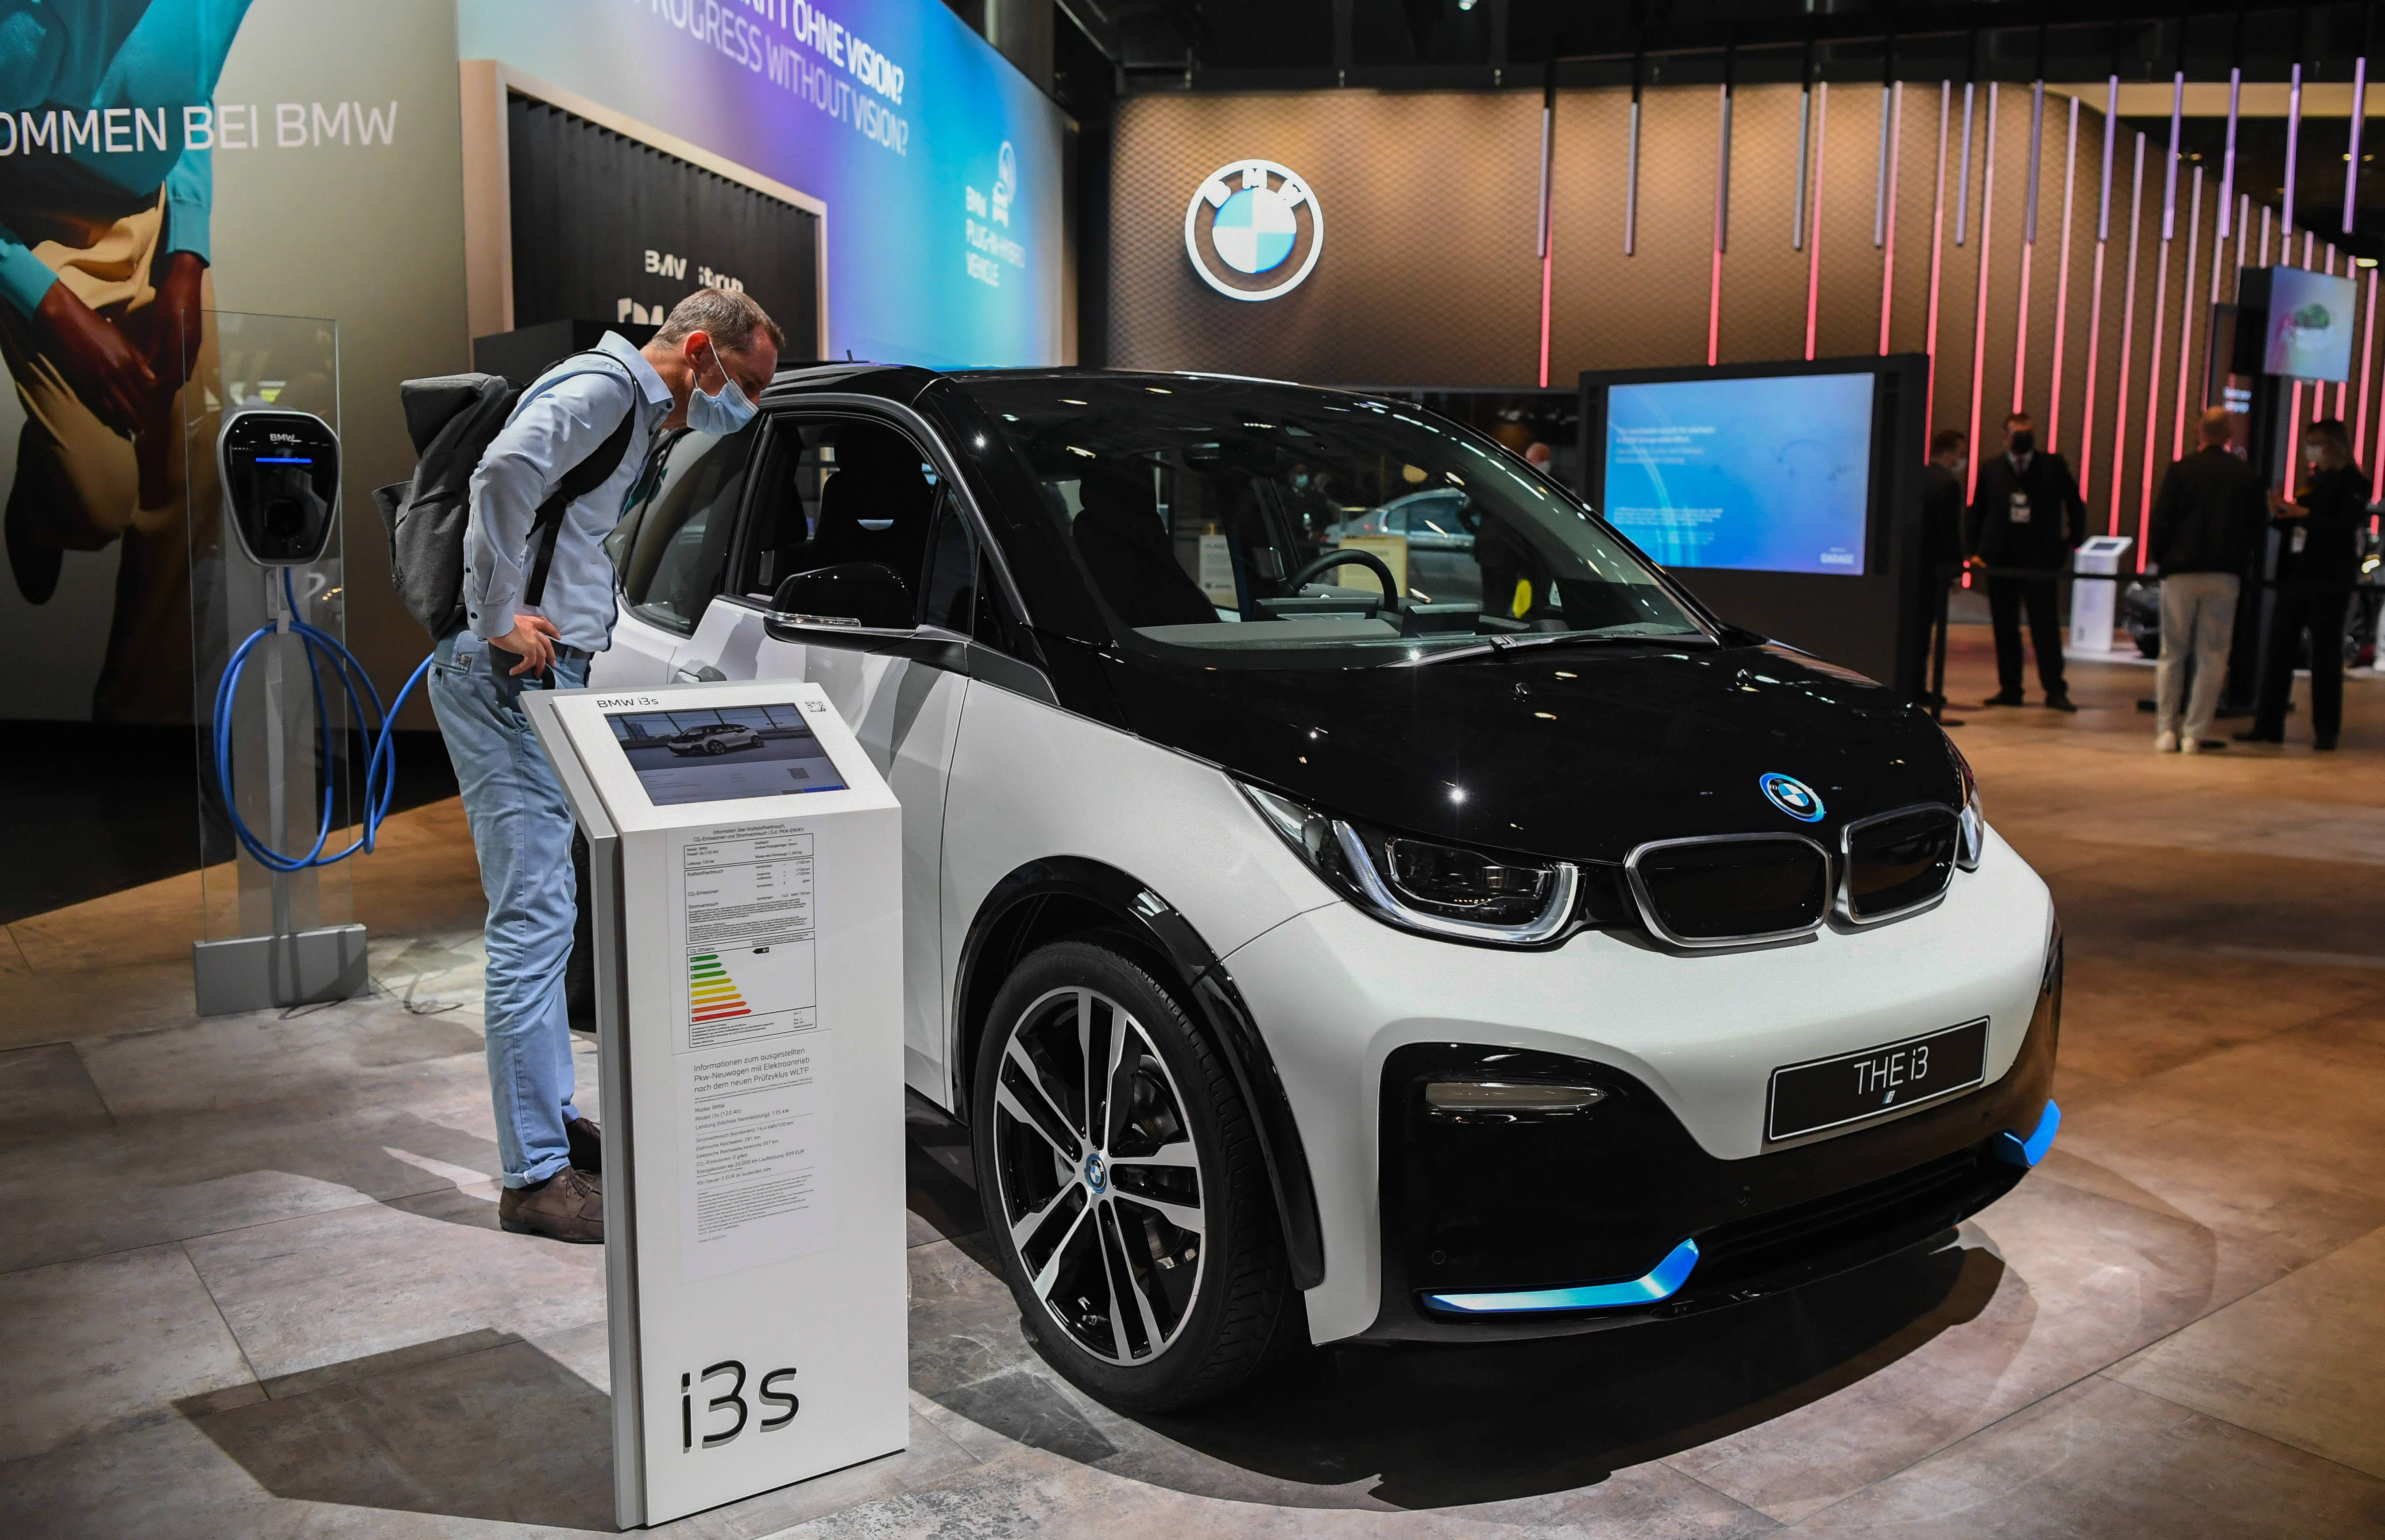 这是9月7日在德国慕尼黑国际车展上拍摄的宝马i3s电动汽车.